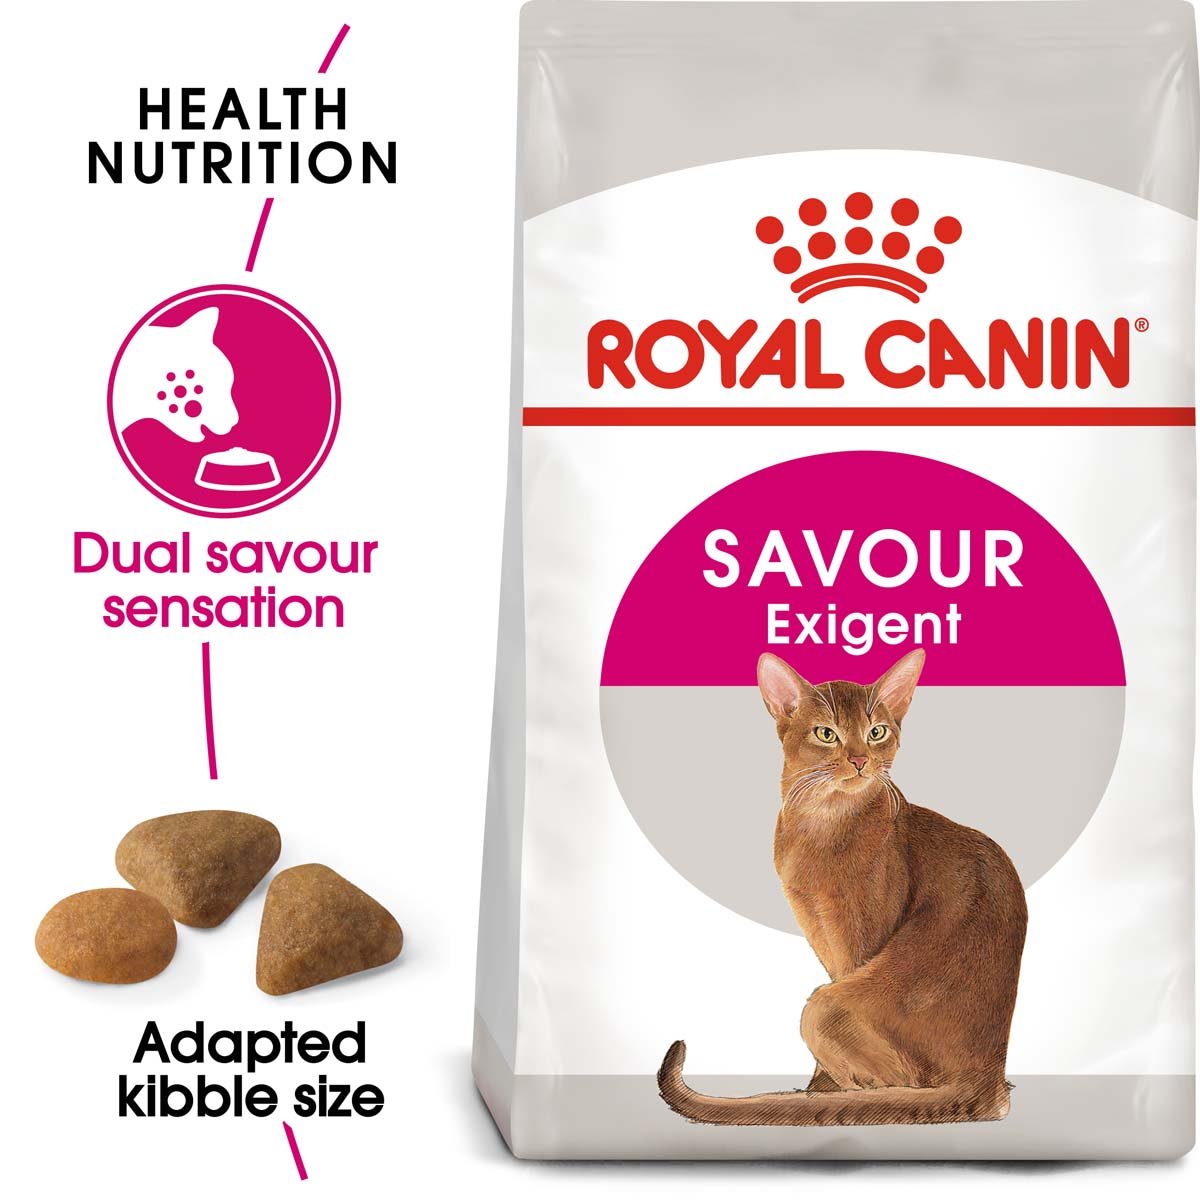 ROYAL CANIN SAVOUR EXIGENT Trockenfutter für wählerische Katzen 10kg von Royal Canin